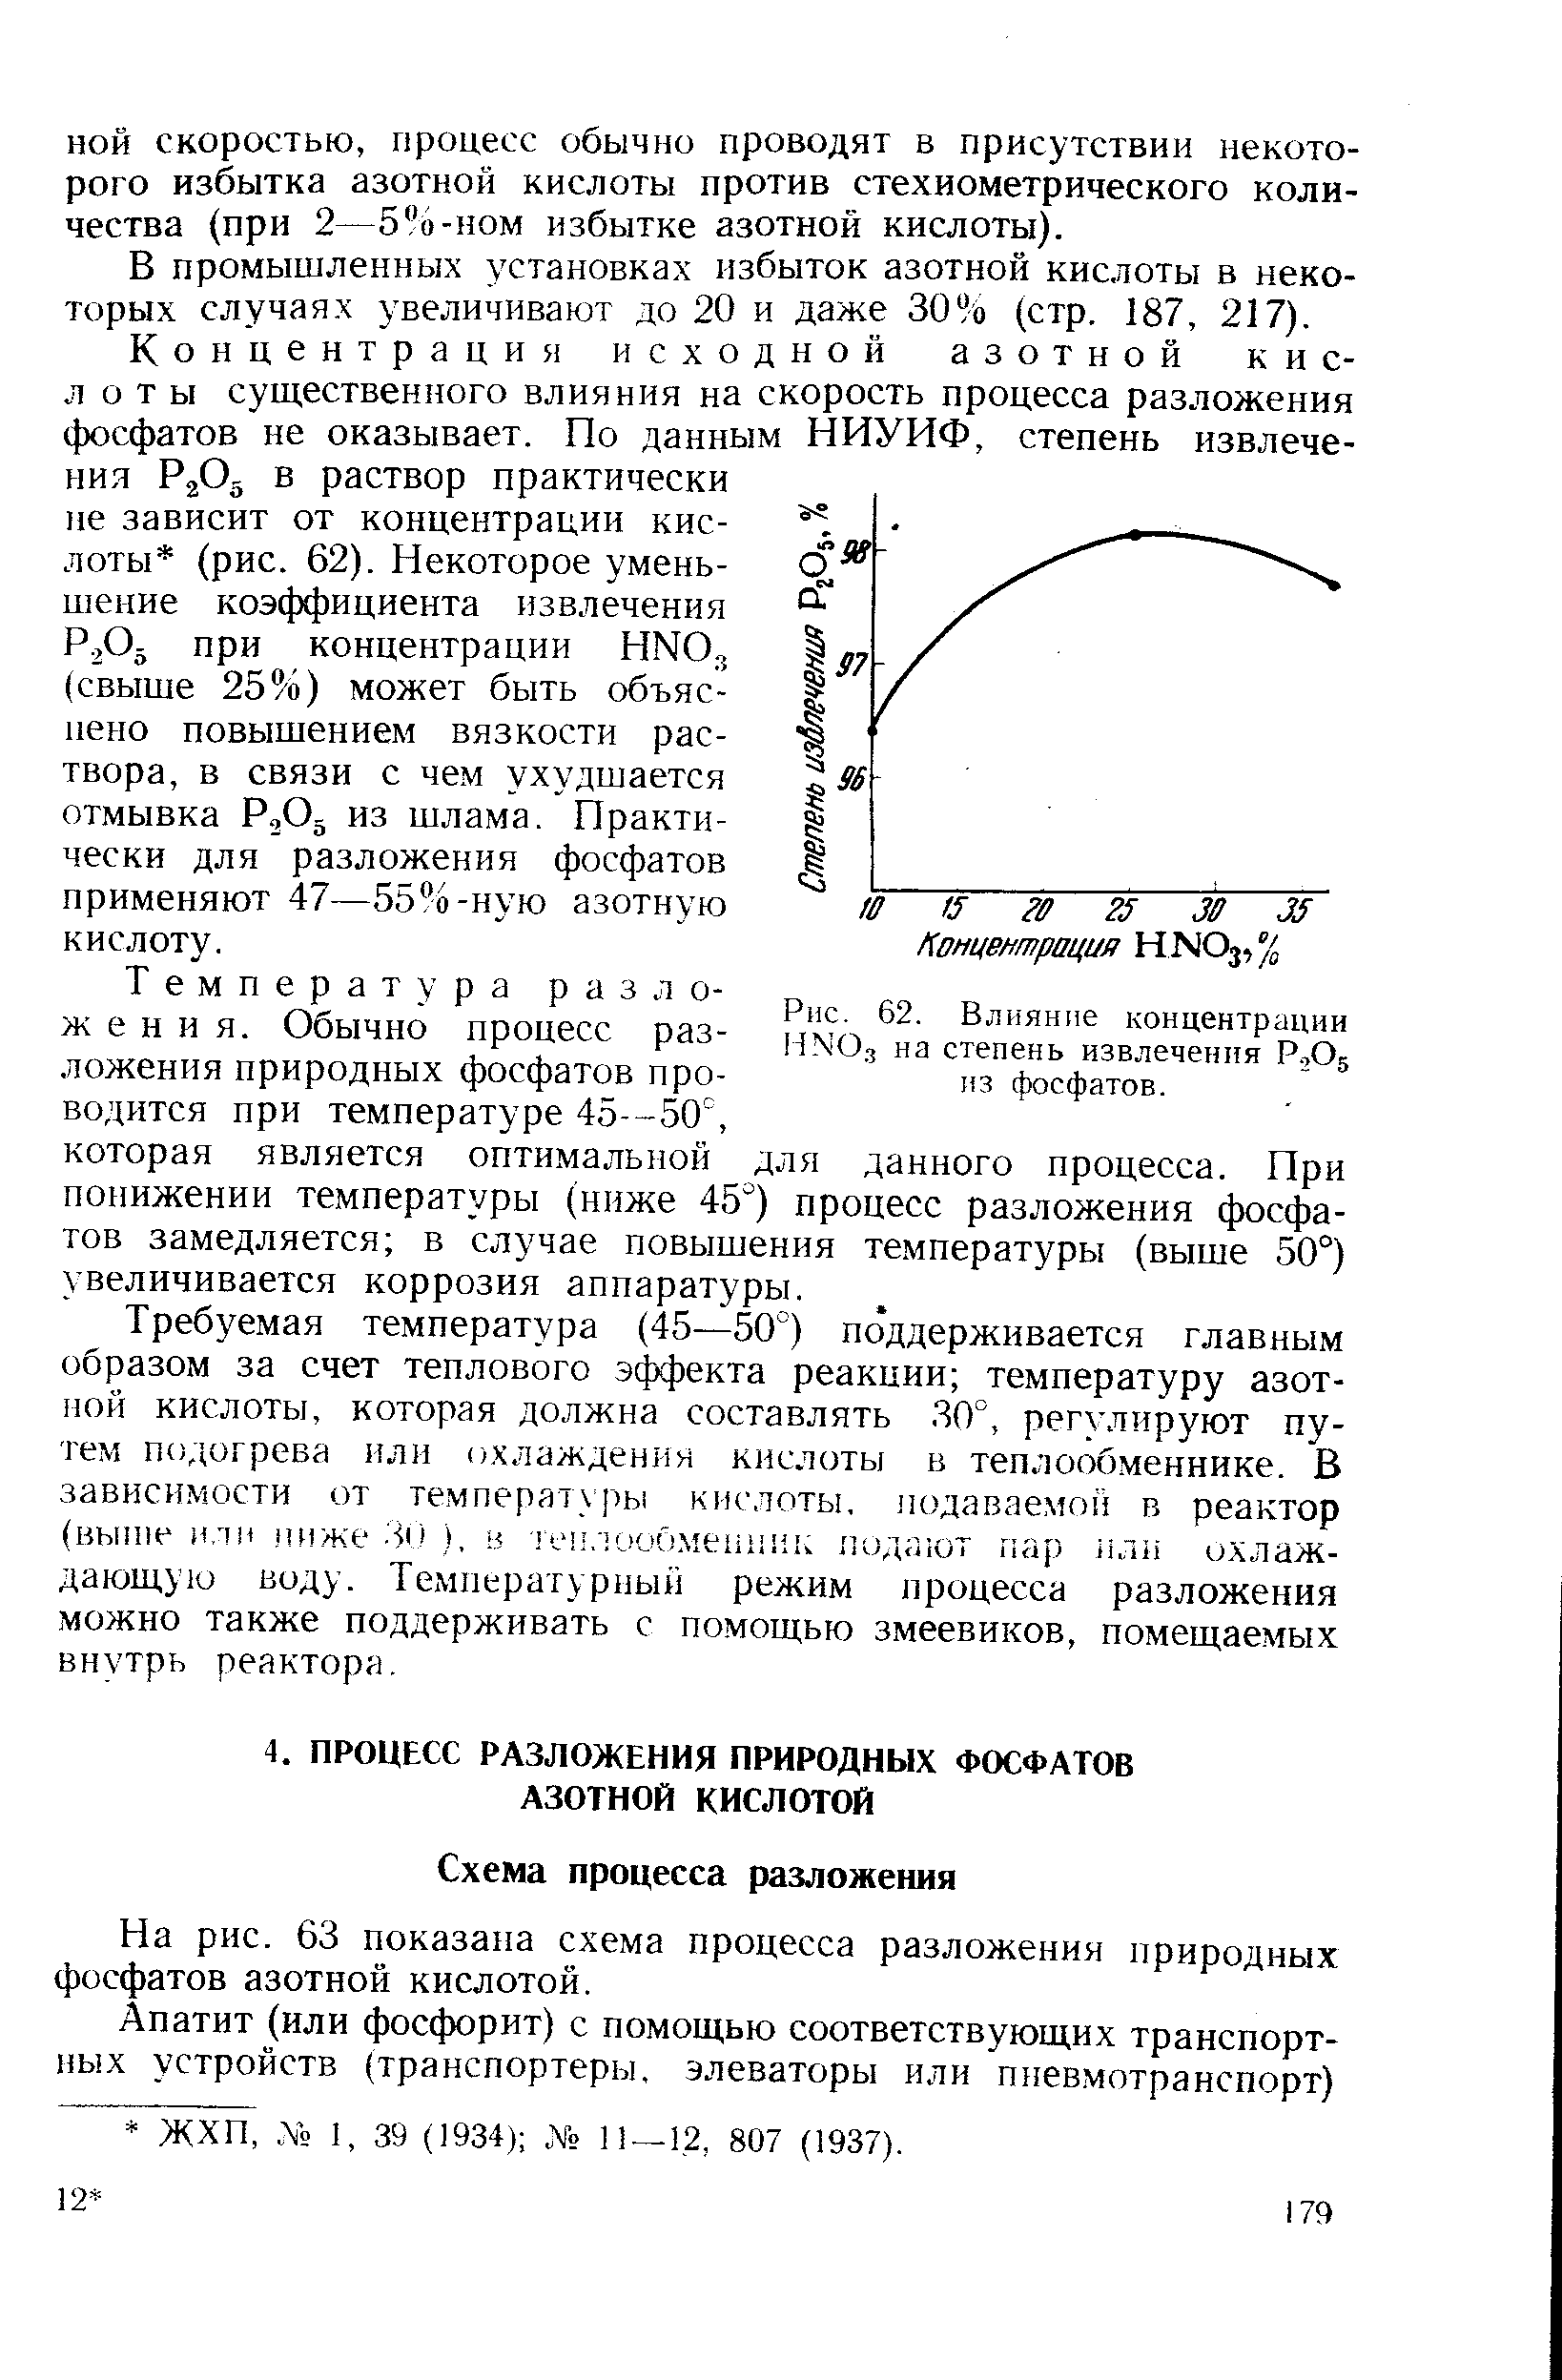 На рис. 63 показана схема процесса разложения природных фосфатов азотной кислотой.